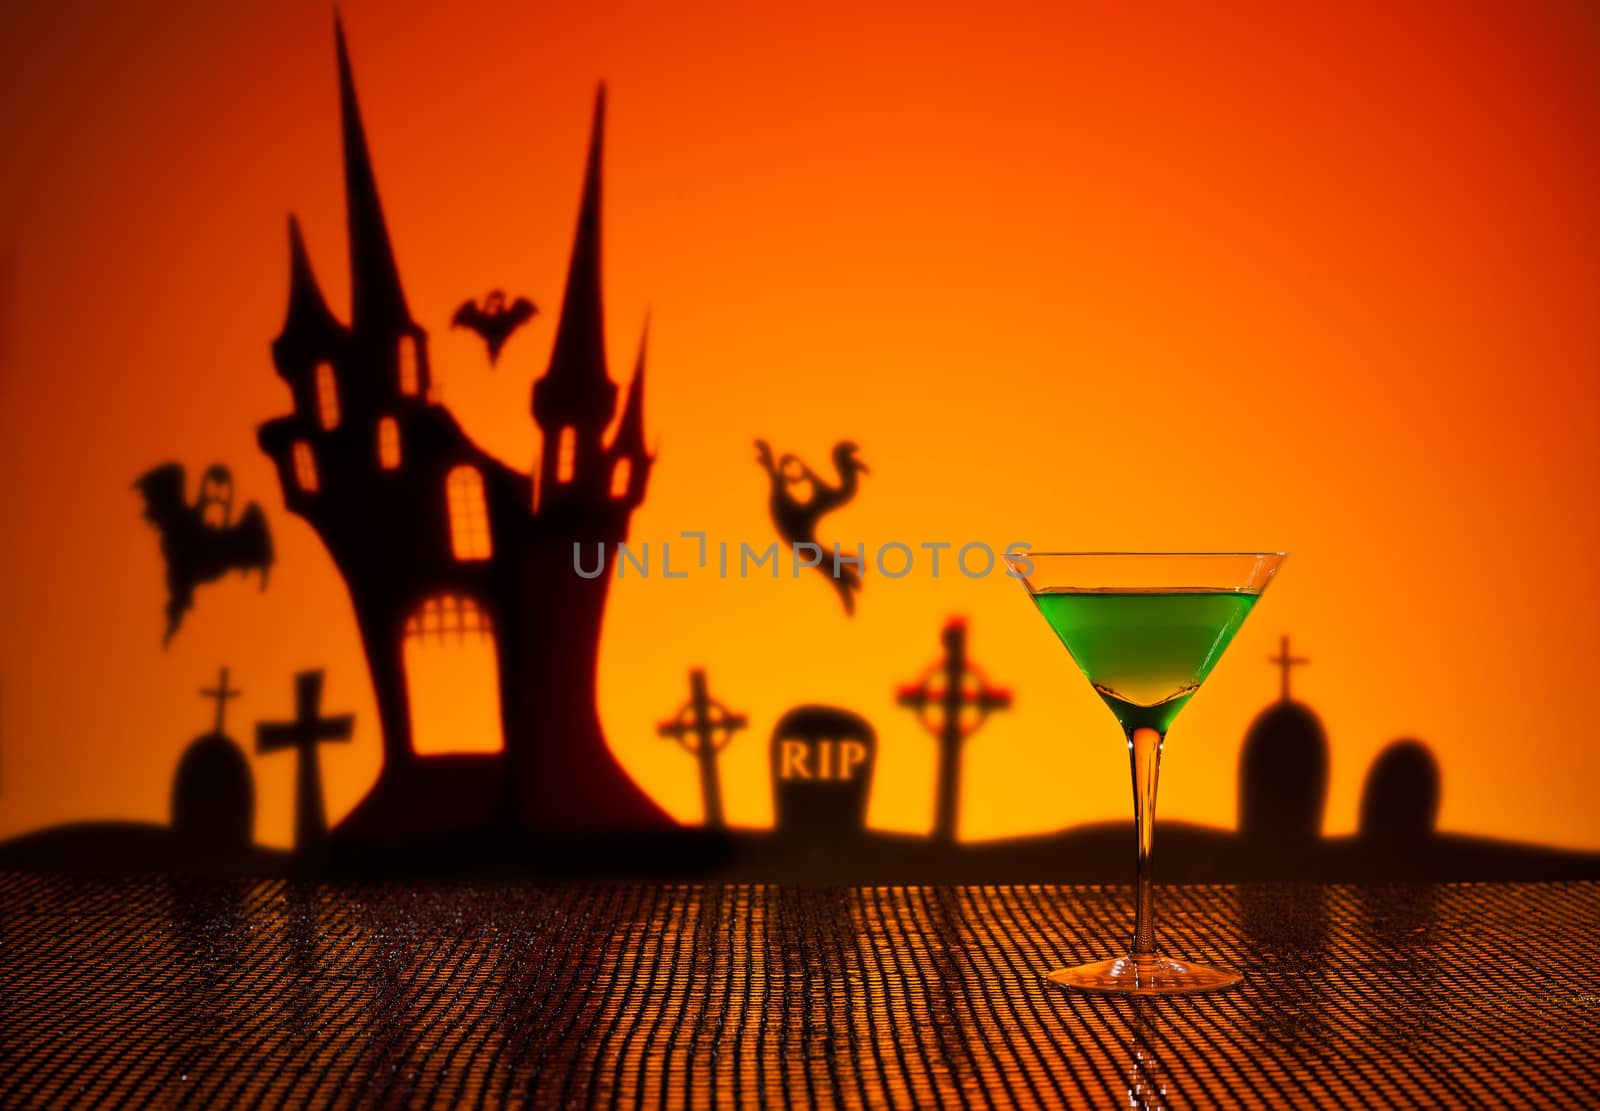 Green Martini in Halloween setting by 3523Studio